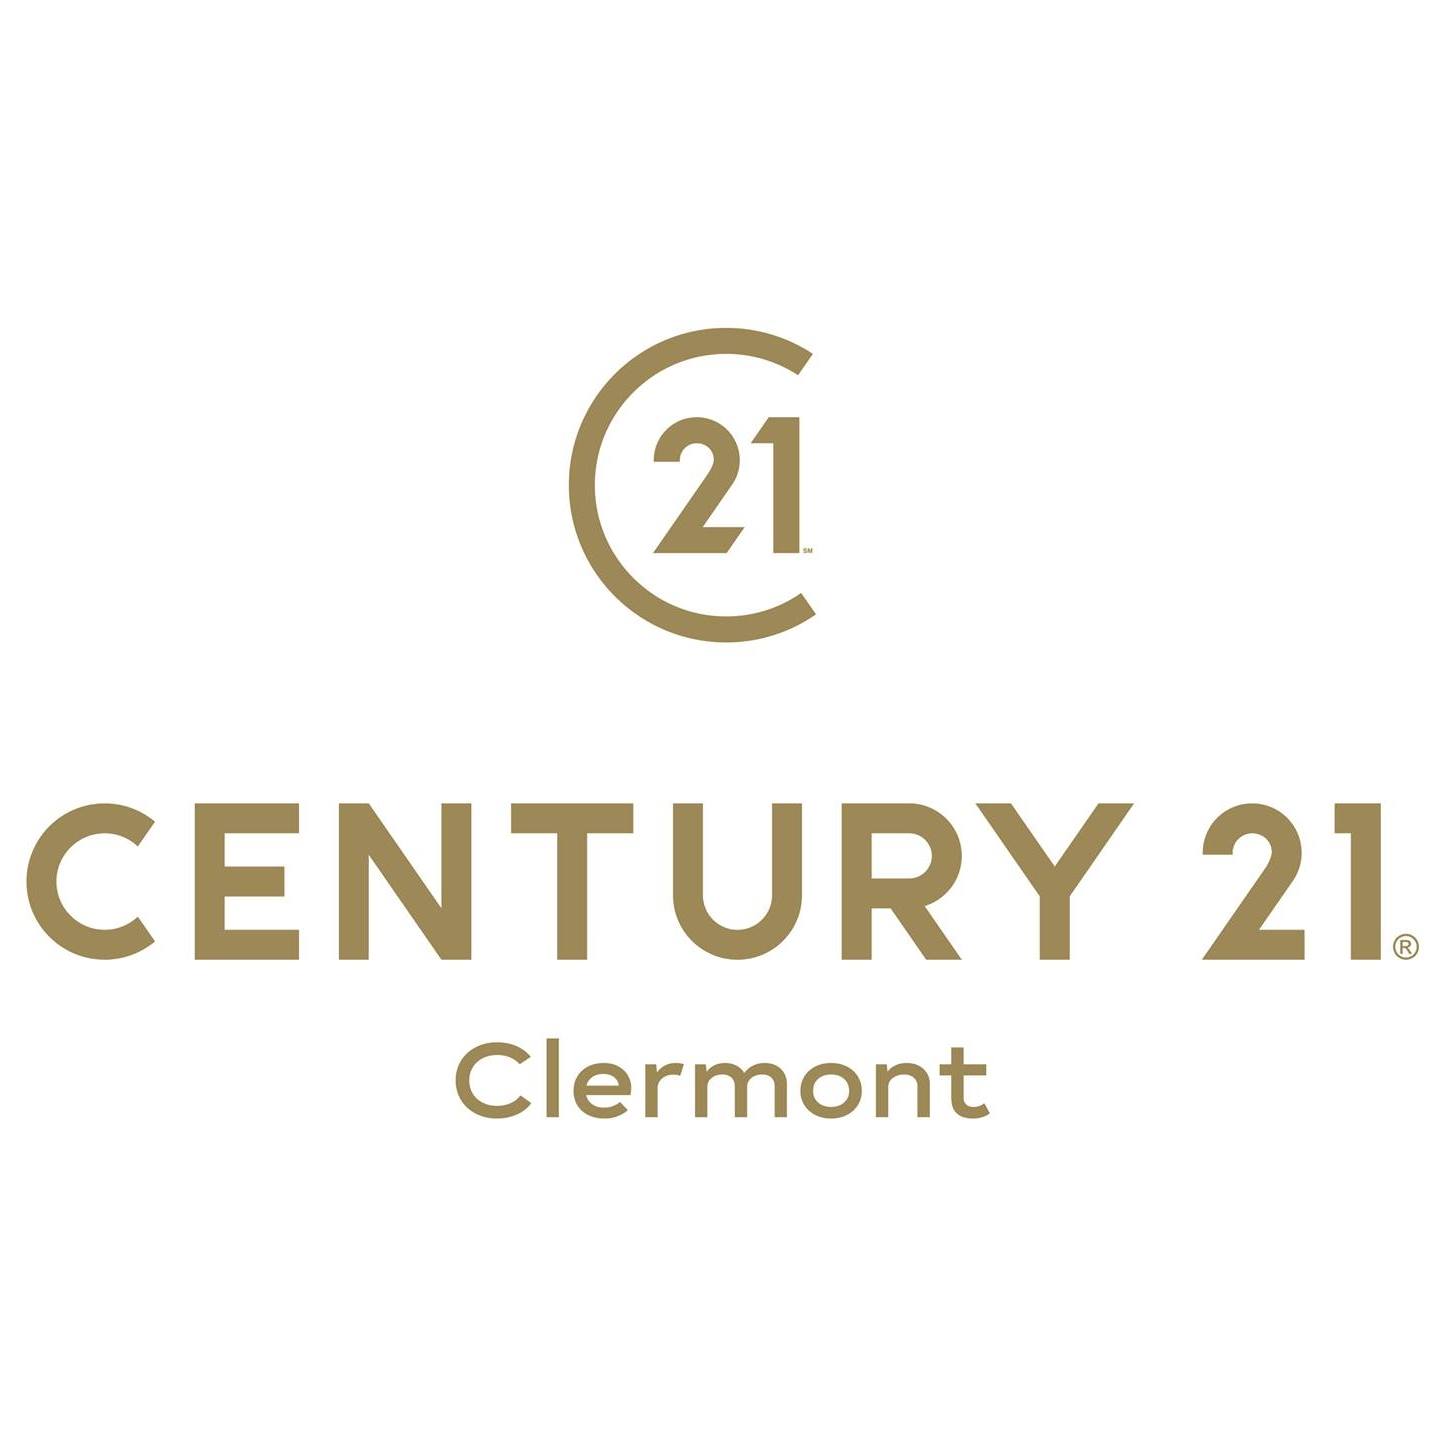 C21 clermont